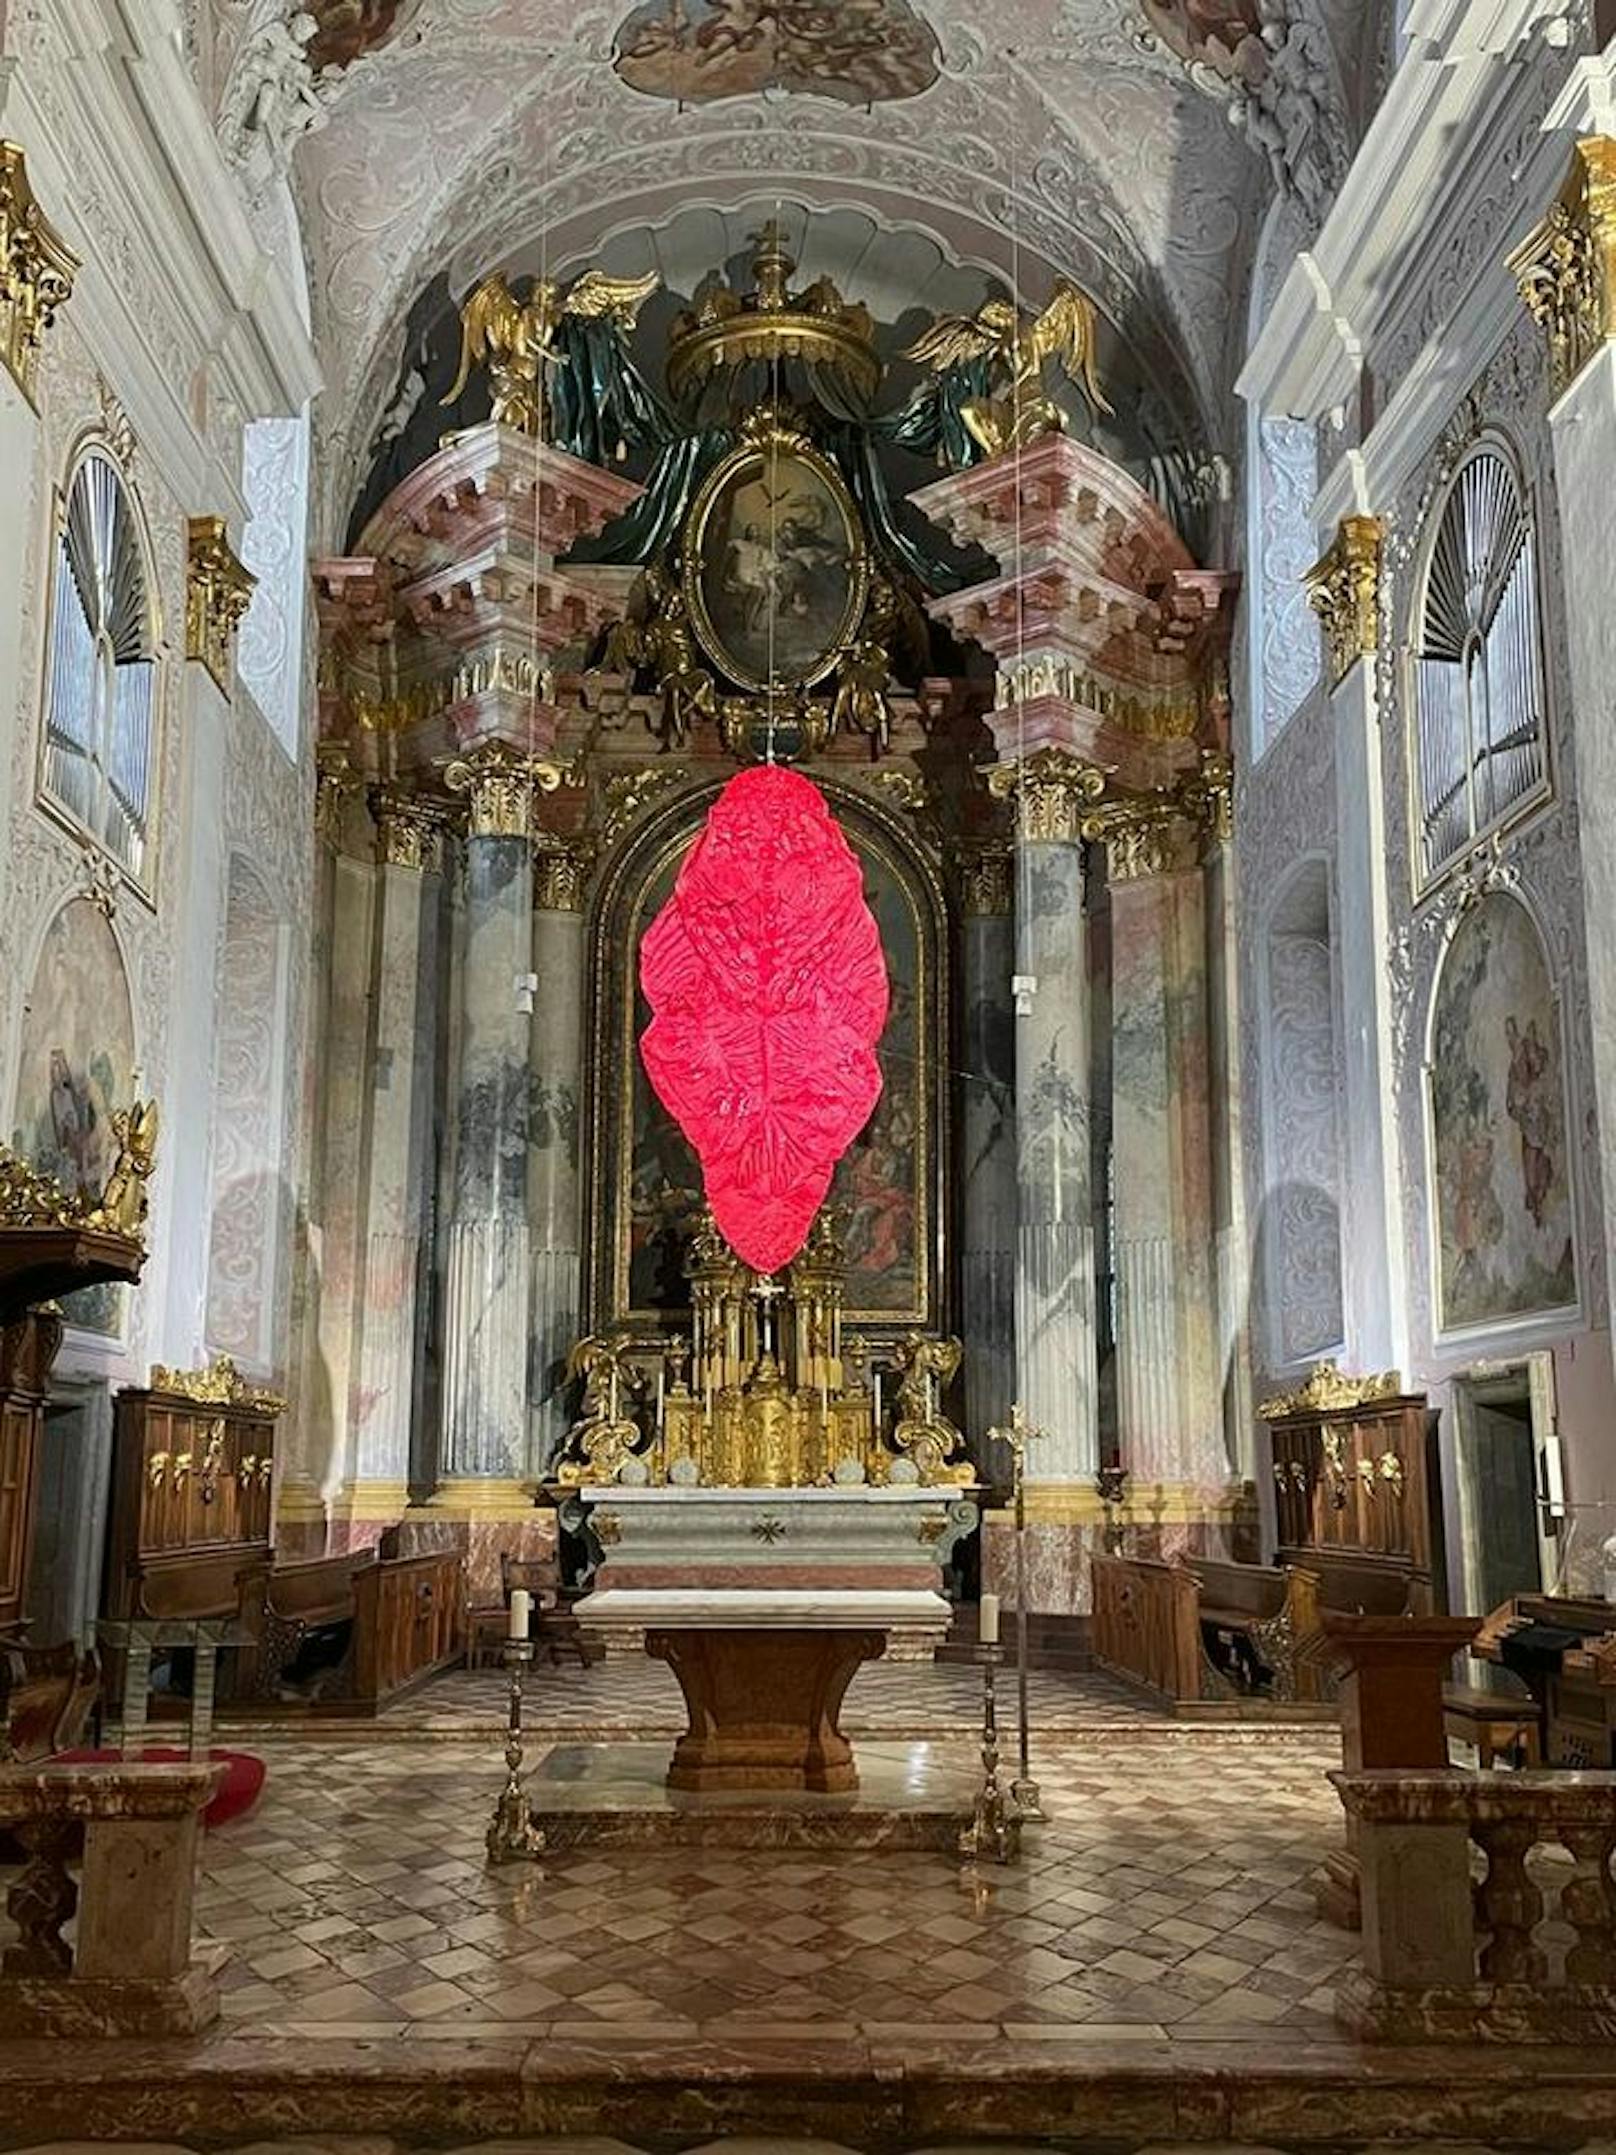 Eine Gemeinde sieht Rot: Ein Fastentuch in Zungen-Form regt Besucher des Klagenfurter Doms auf.